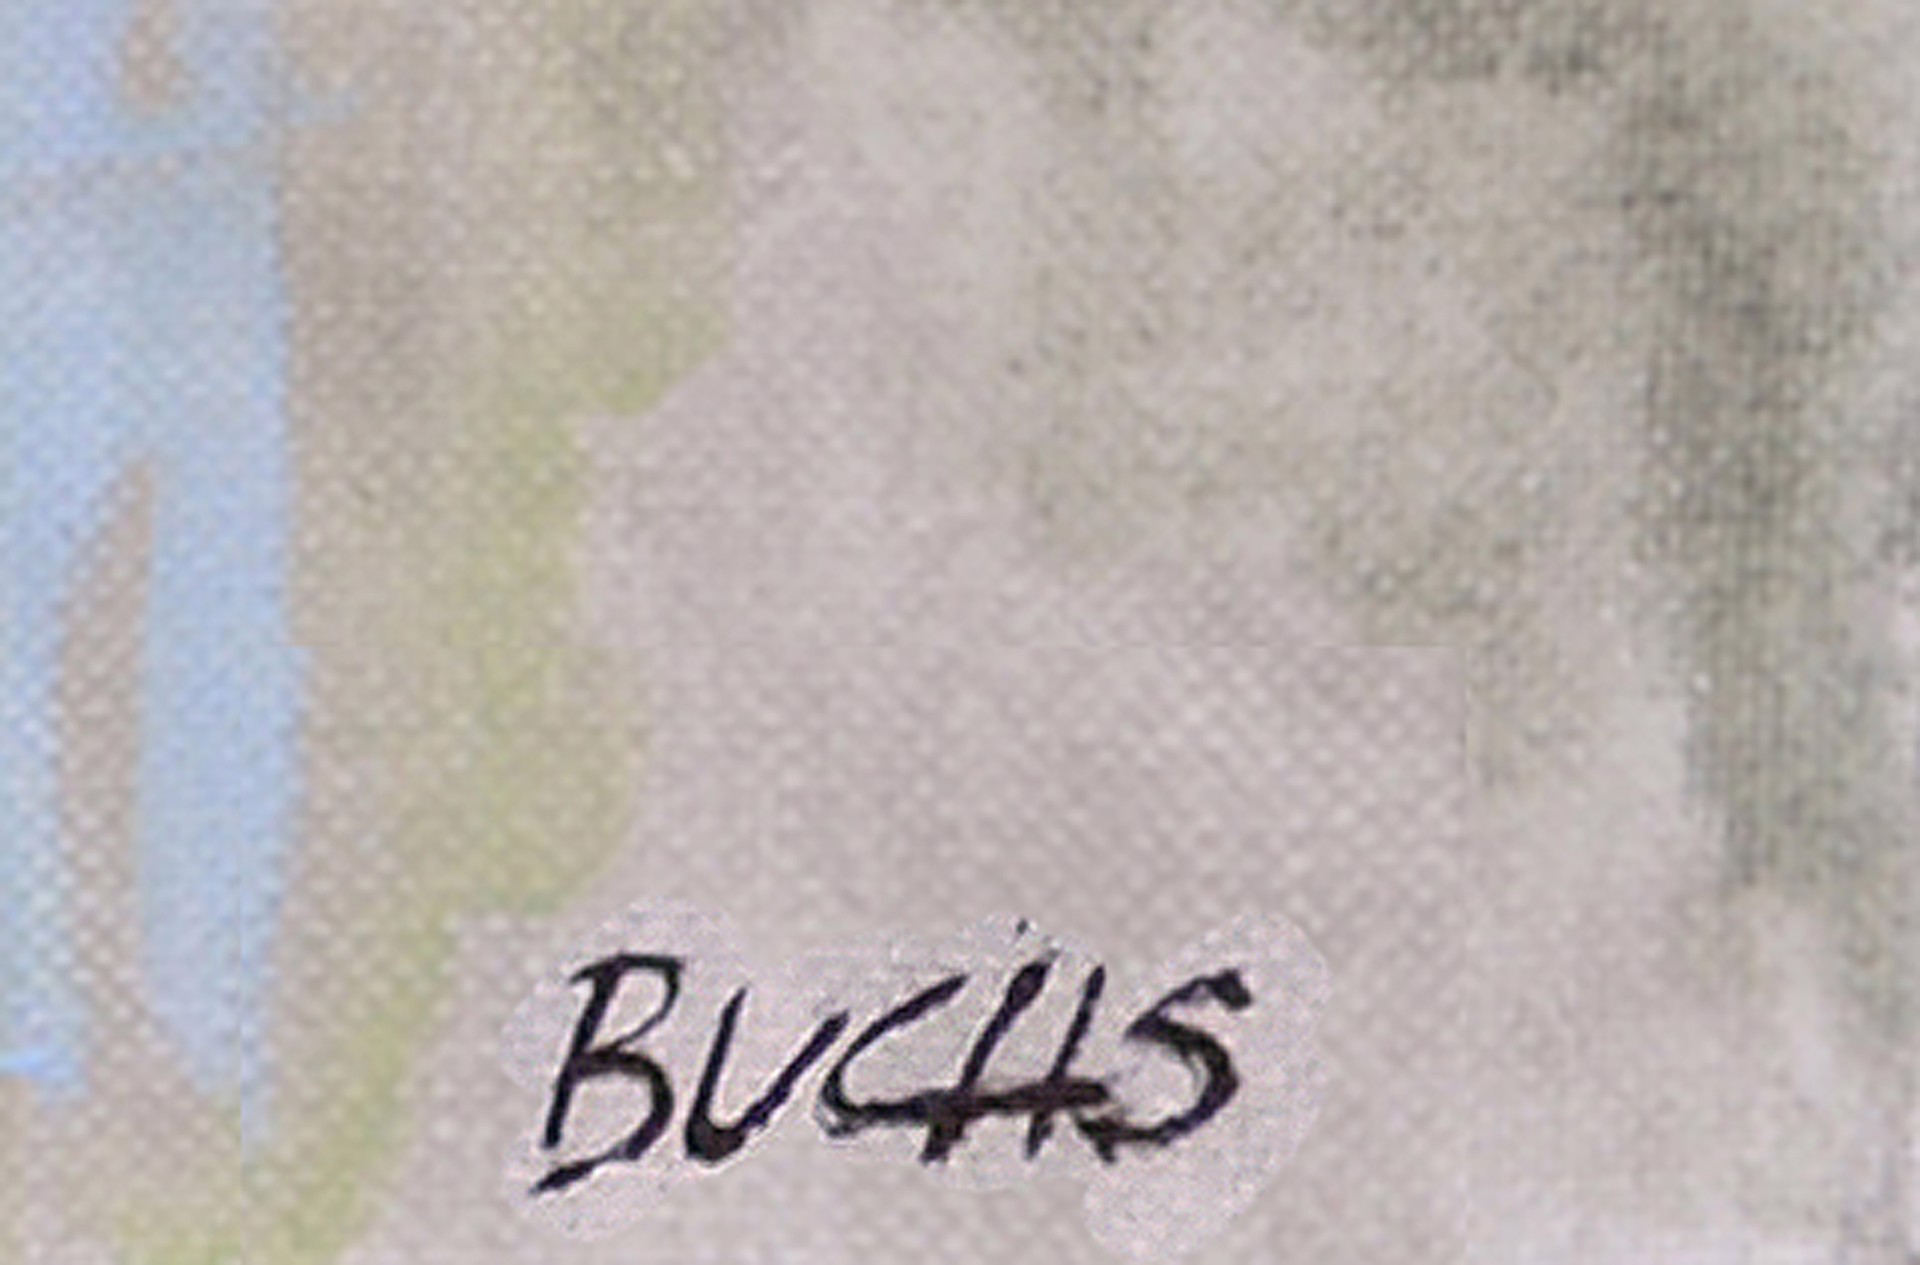 Plum Blues by Thomas Buchs